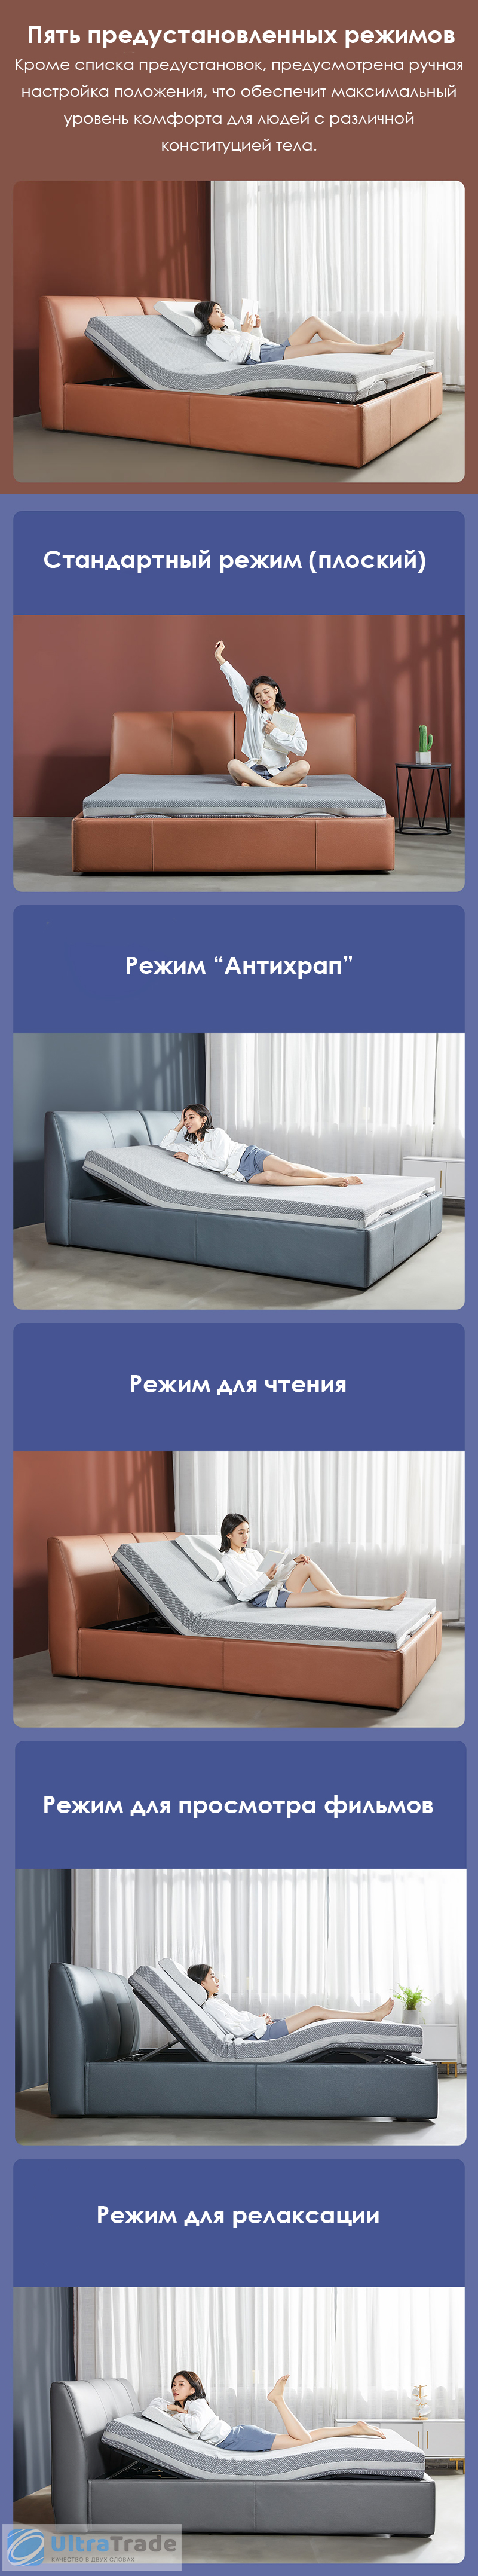 Двуспальная кровать Xiaomi 8h Smart Electric Bed DT1 1.8 m Fashion Orange (умное основание и ортопедический матрас R2 Pro)